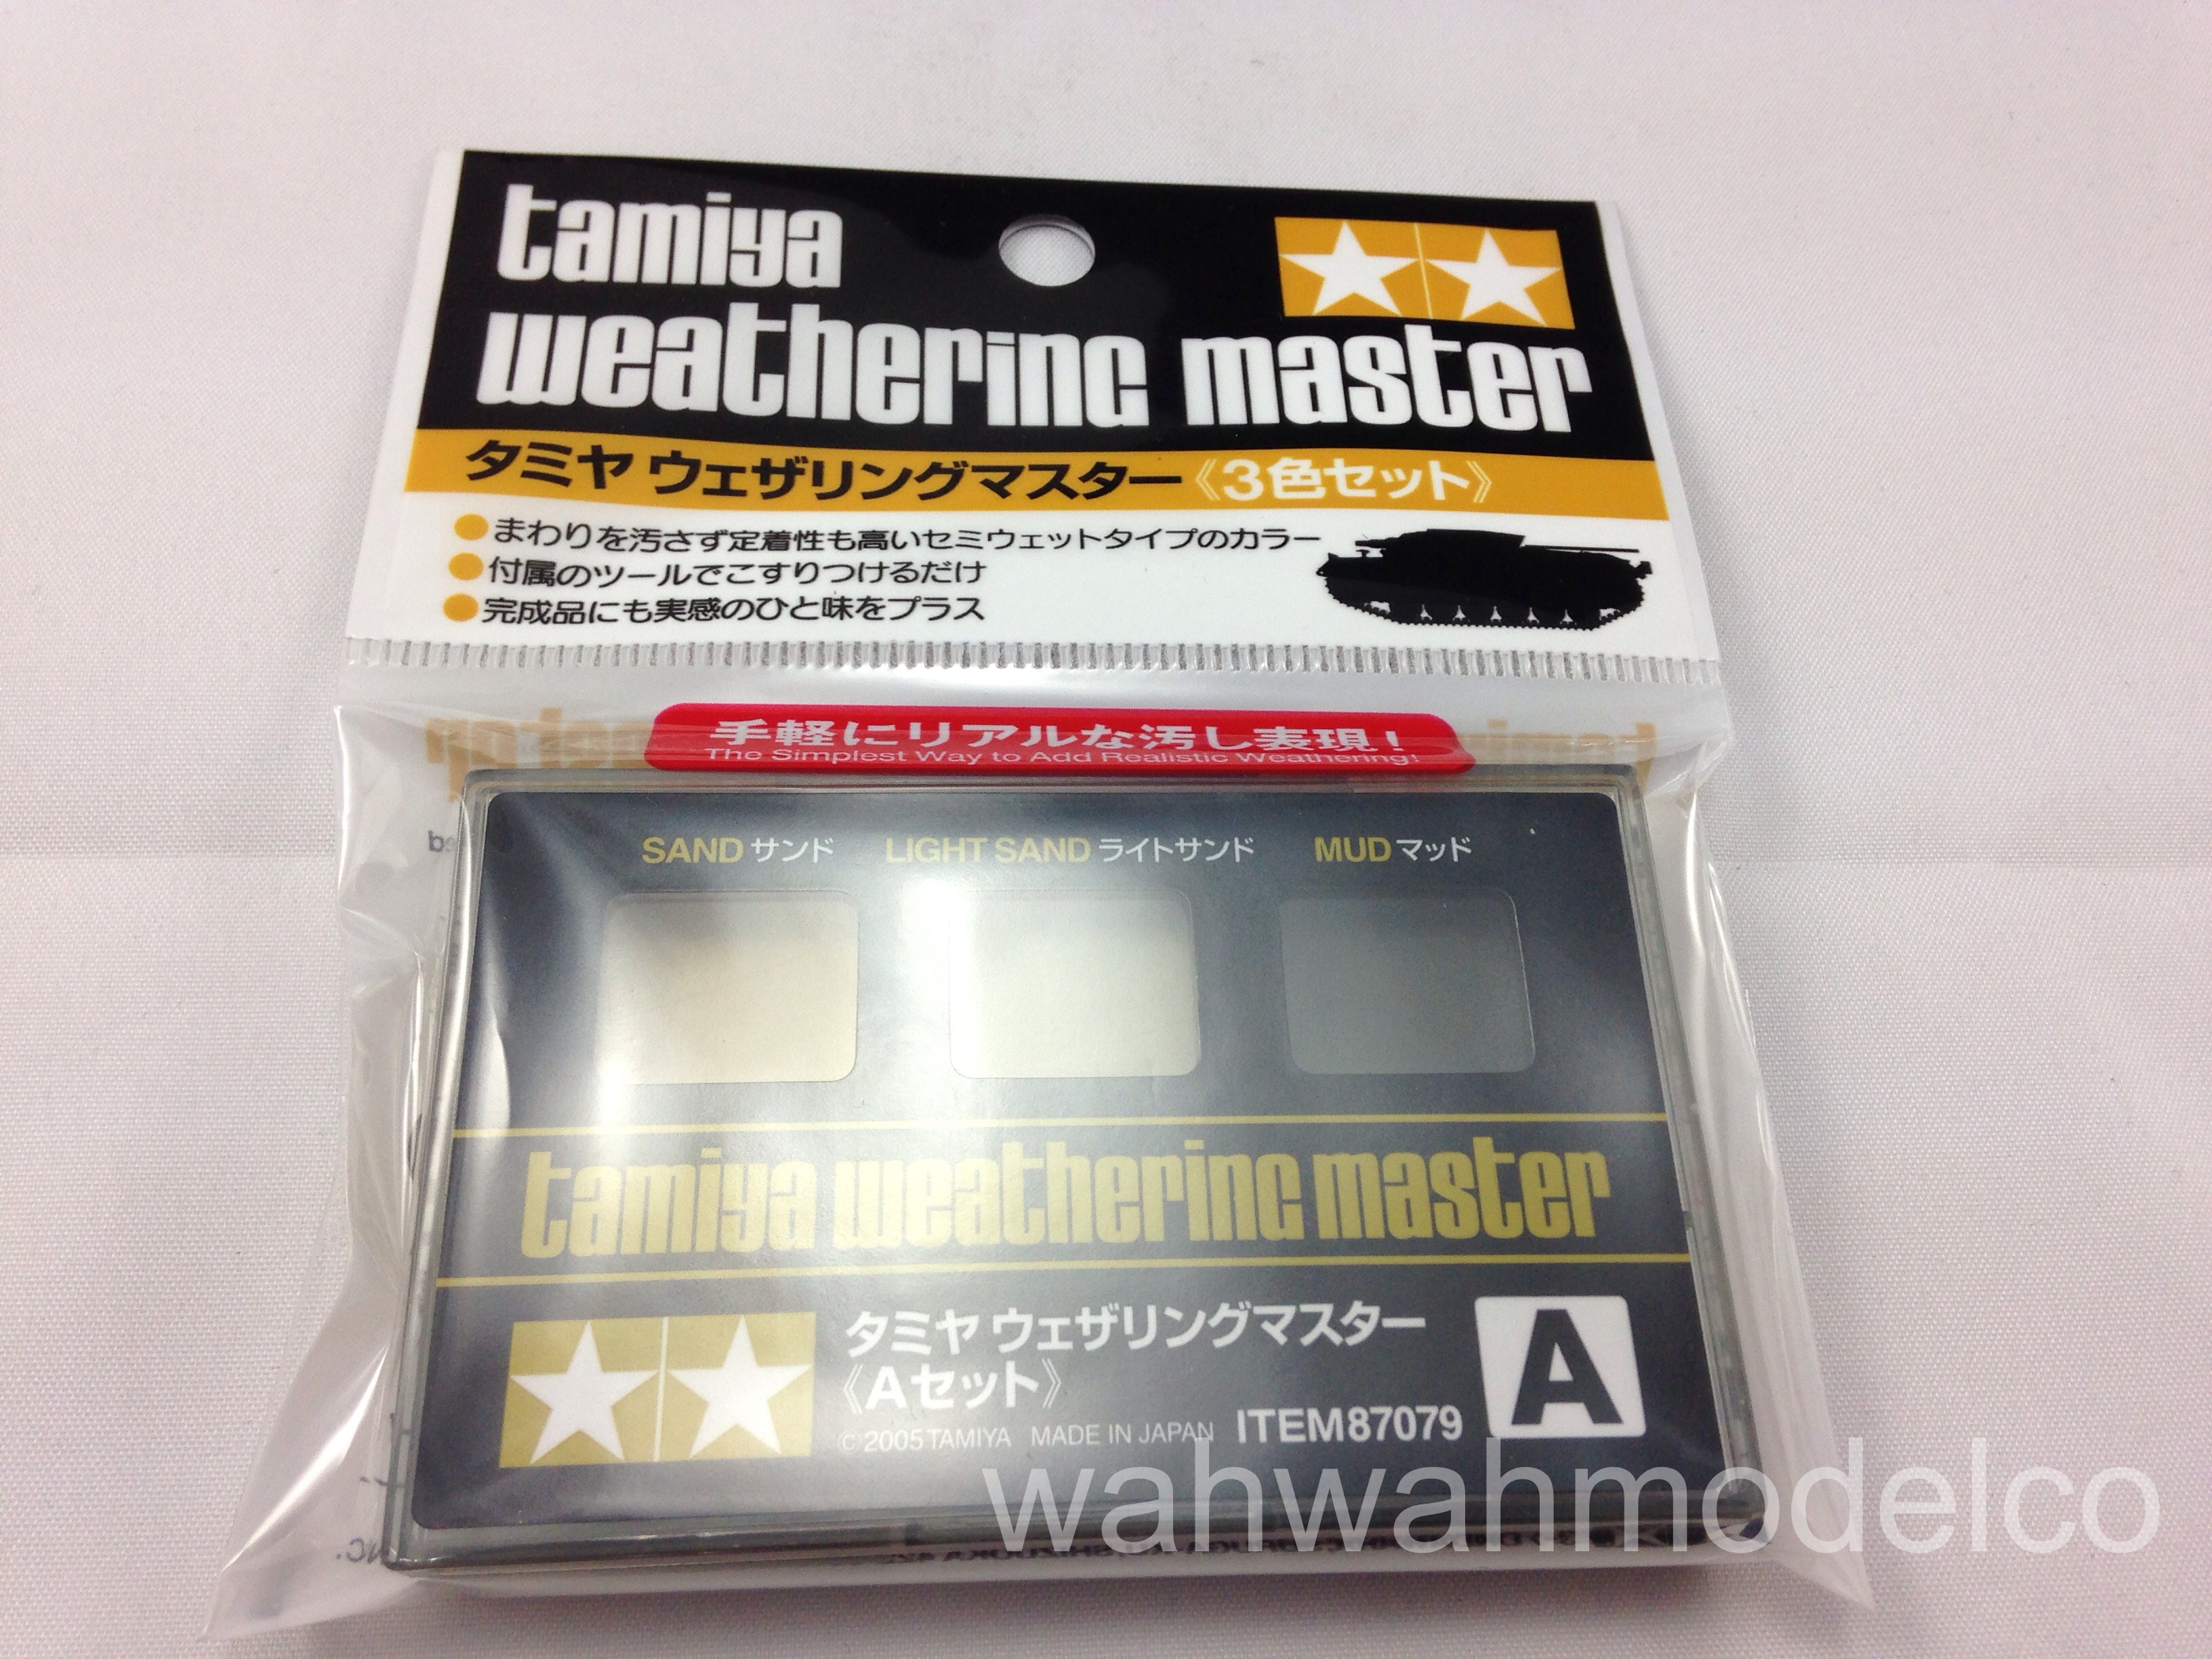 Tamiya 87079 Weathering Master Set A